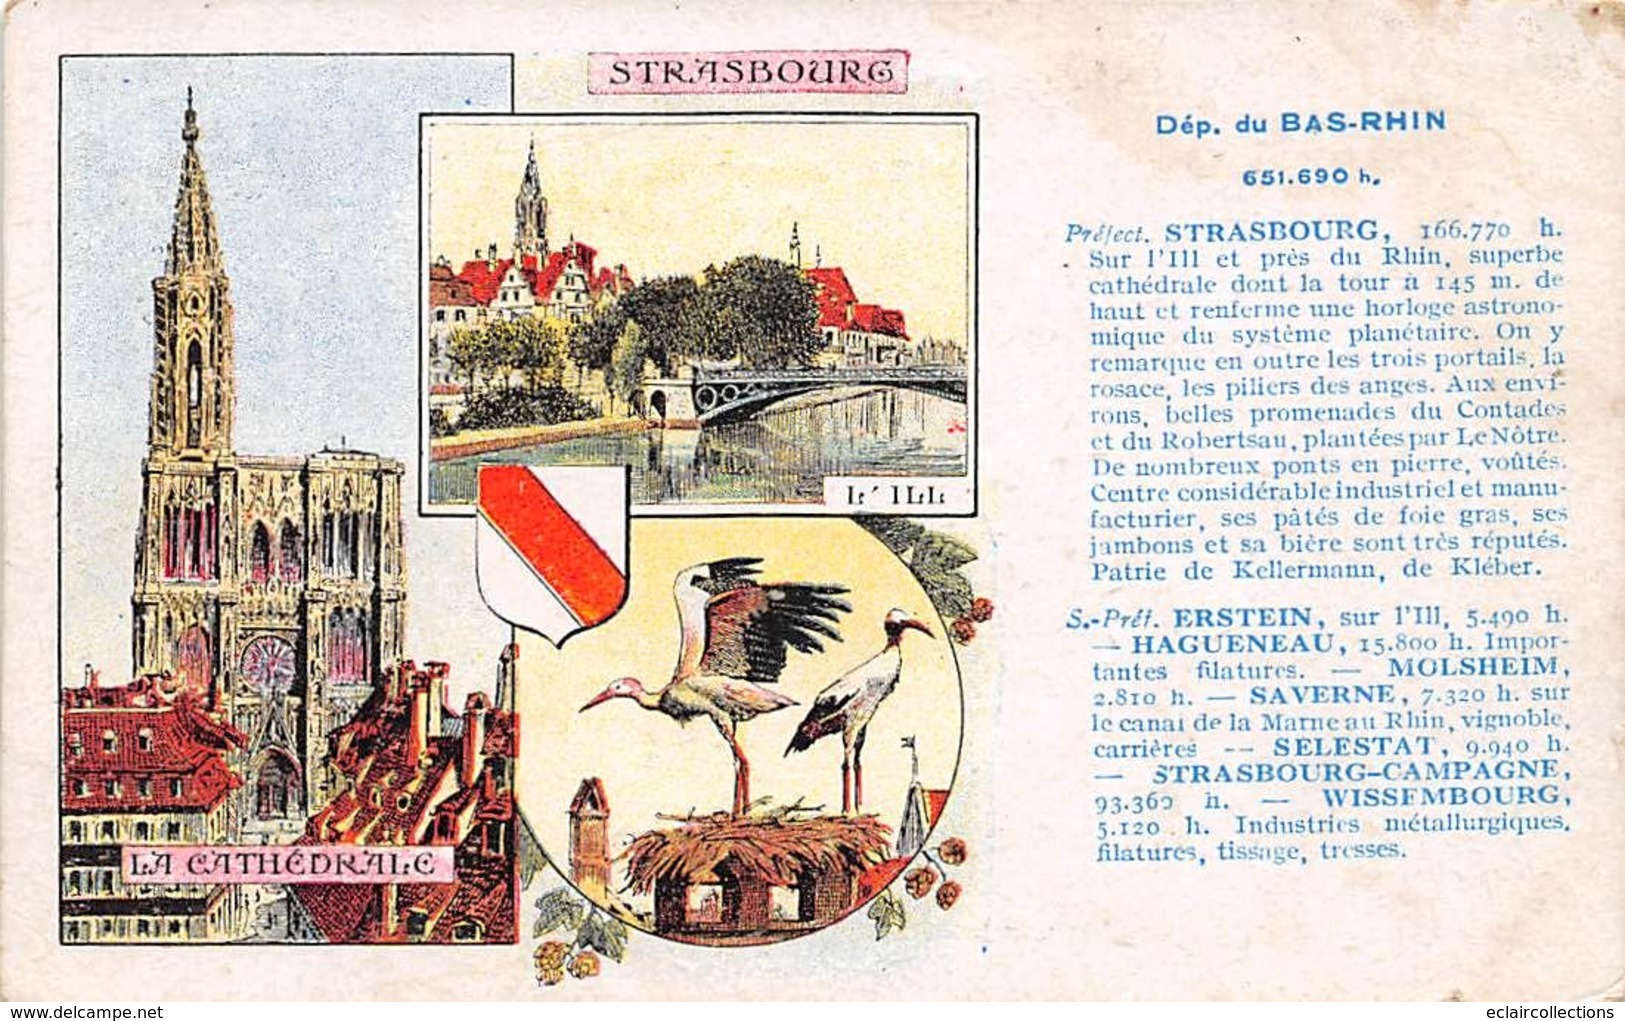 Strasbourg           67         Lot de 29 cartes    Vues diverses           (voir scan)